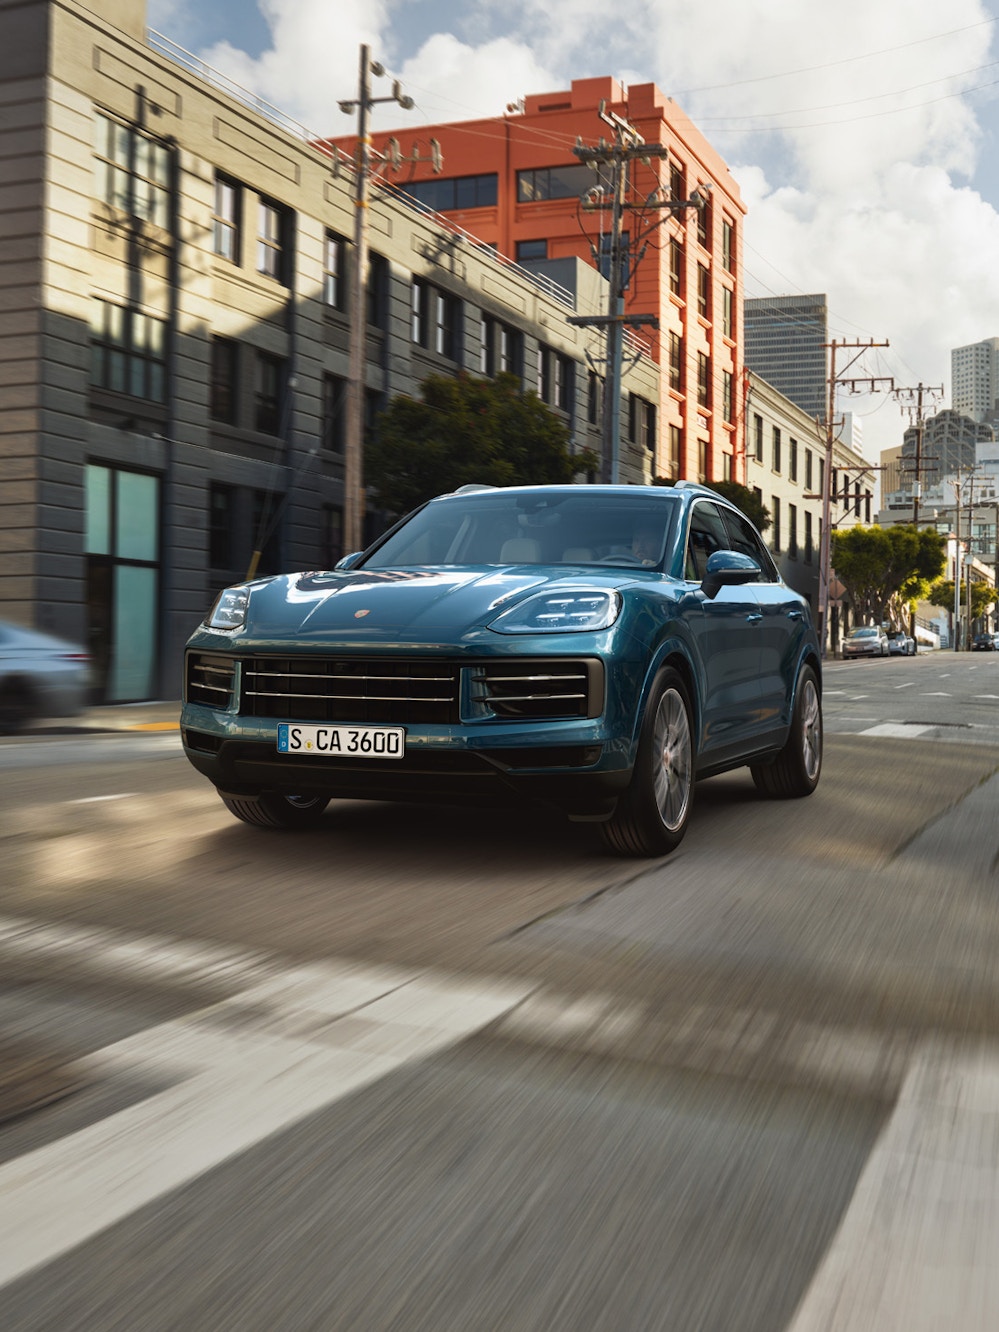 Ein blaumetallicfarbener Porsche Cayenne fährt auf einer Straße in einer Stadt.